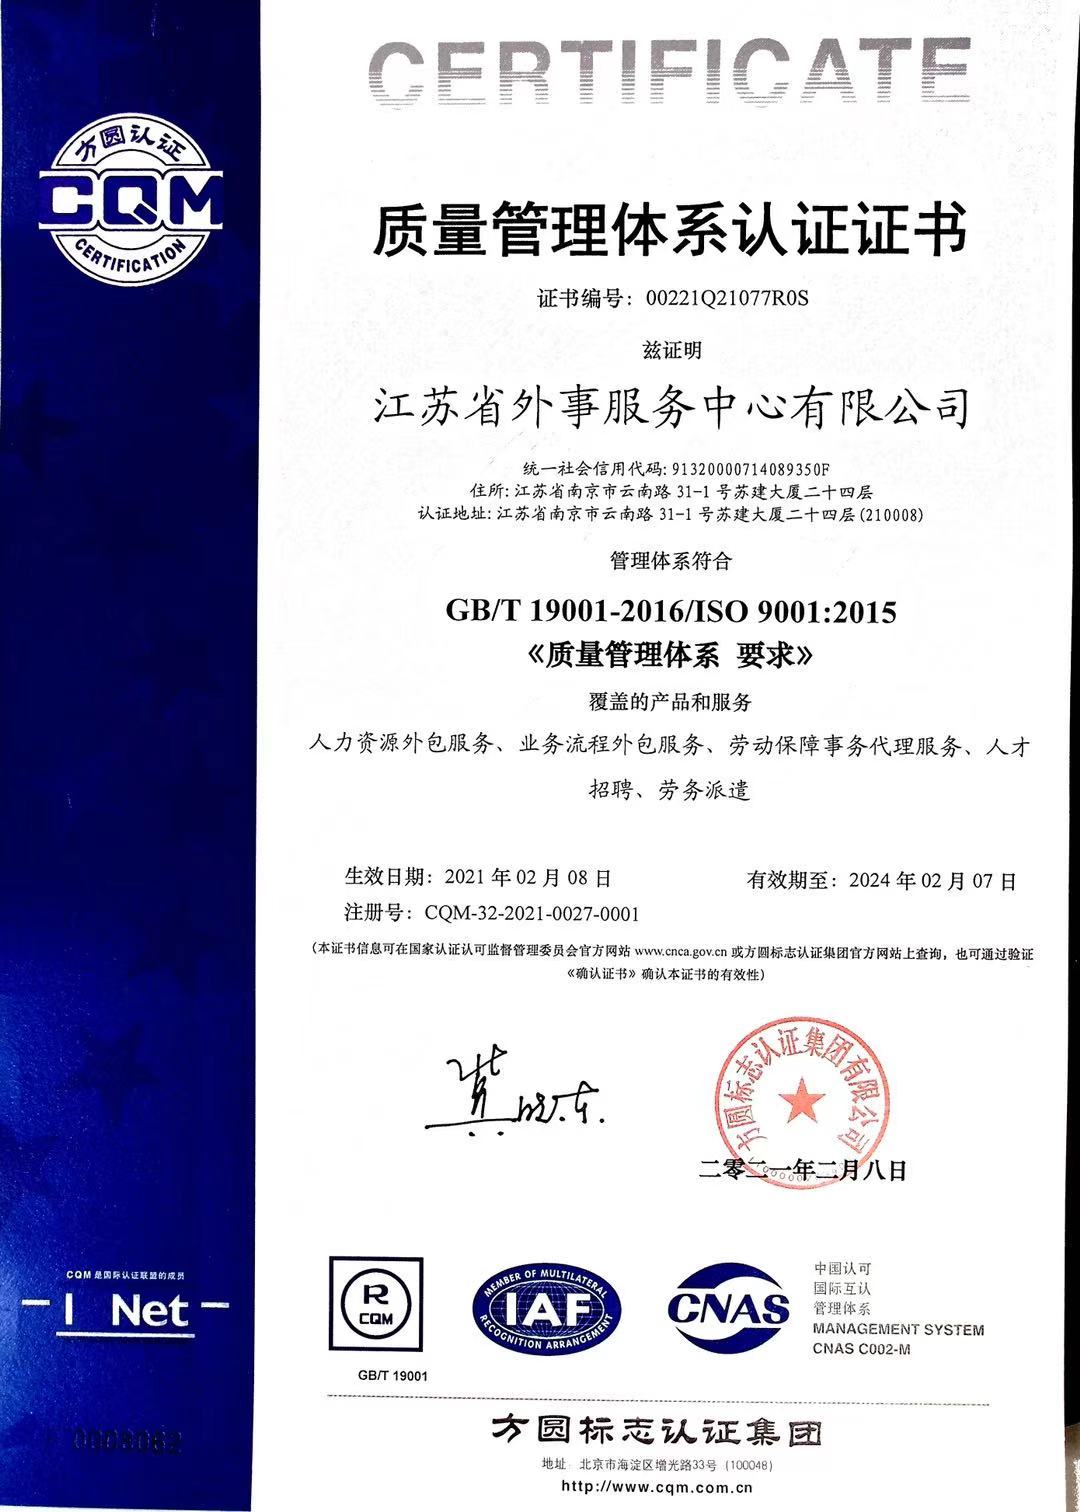 江苏盛世国际棋牌成功获得ISO9001质量管理体系认证证书